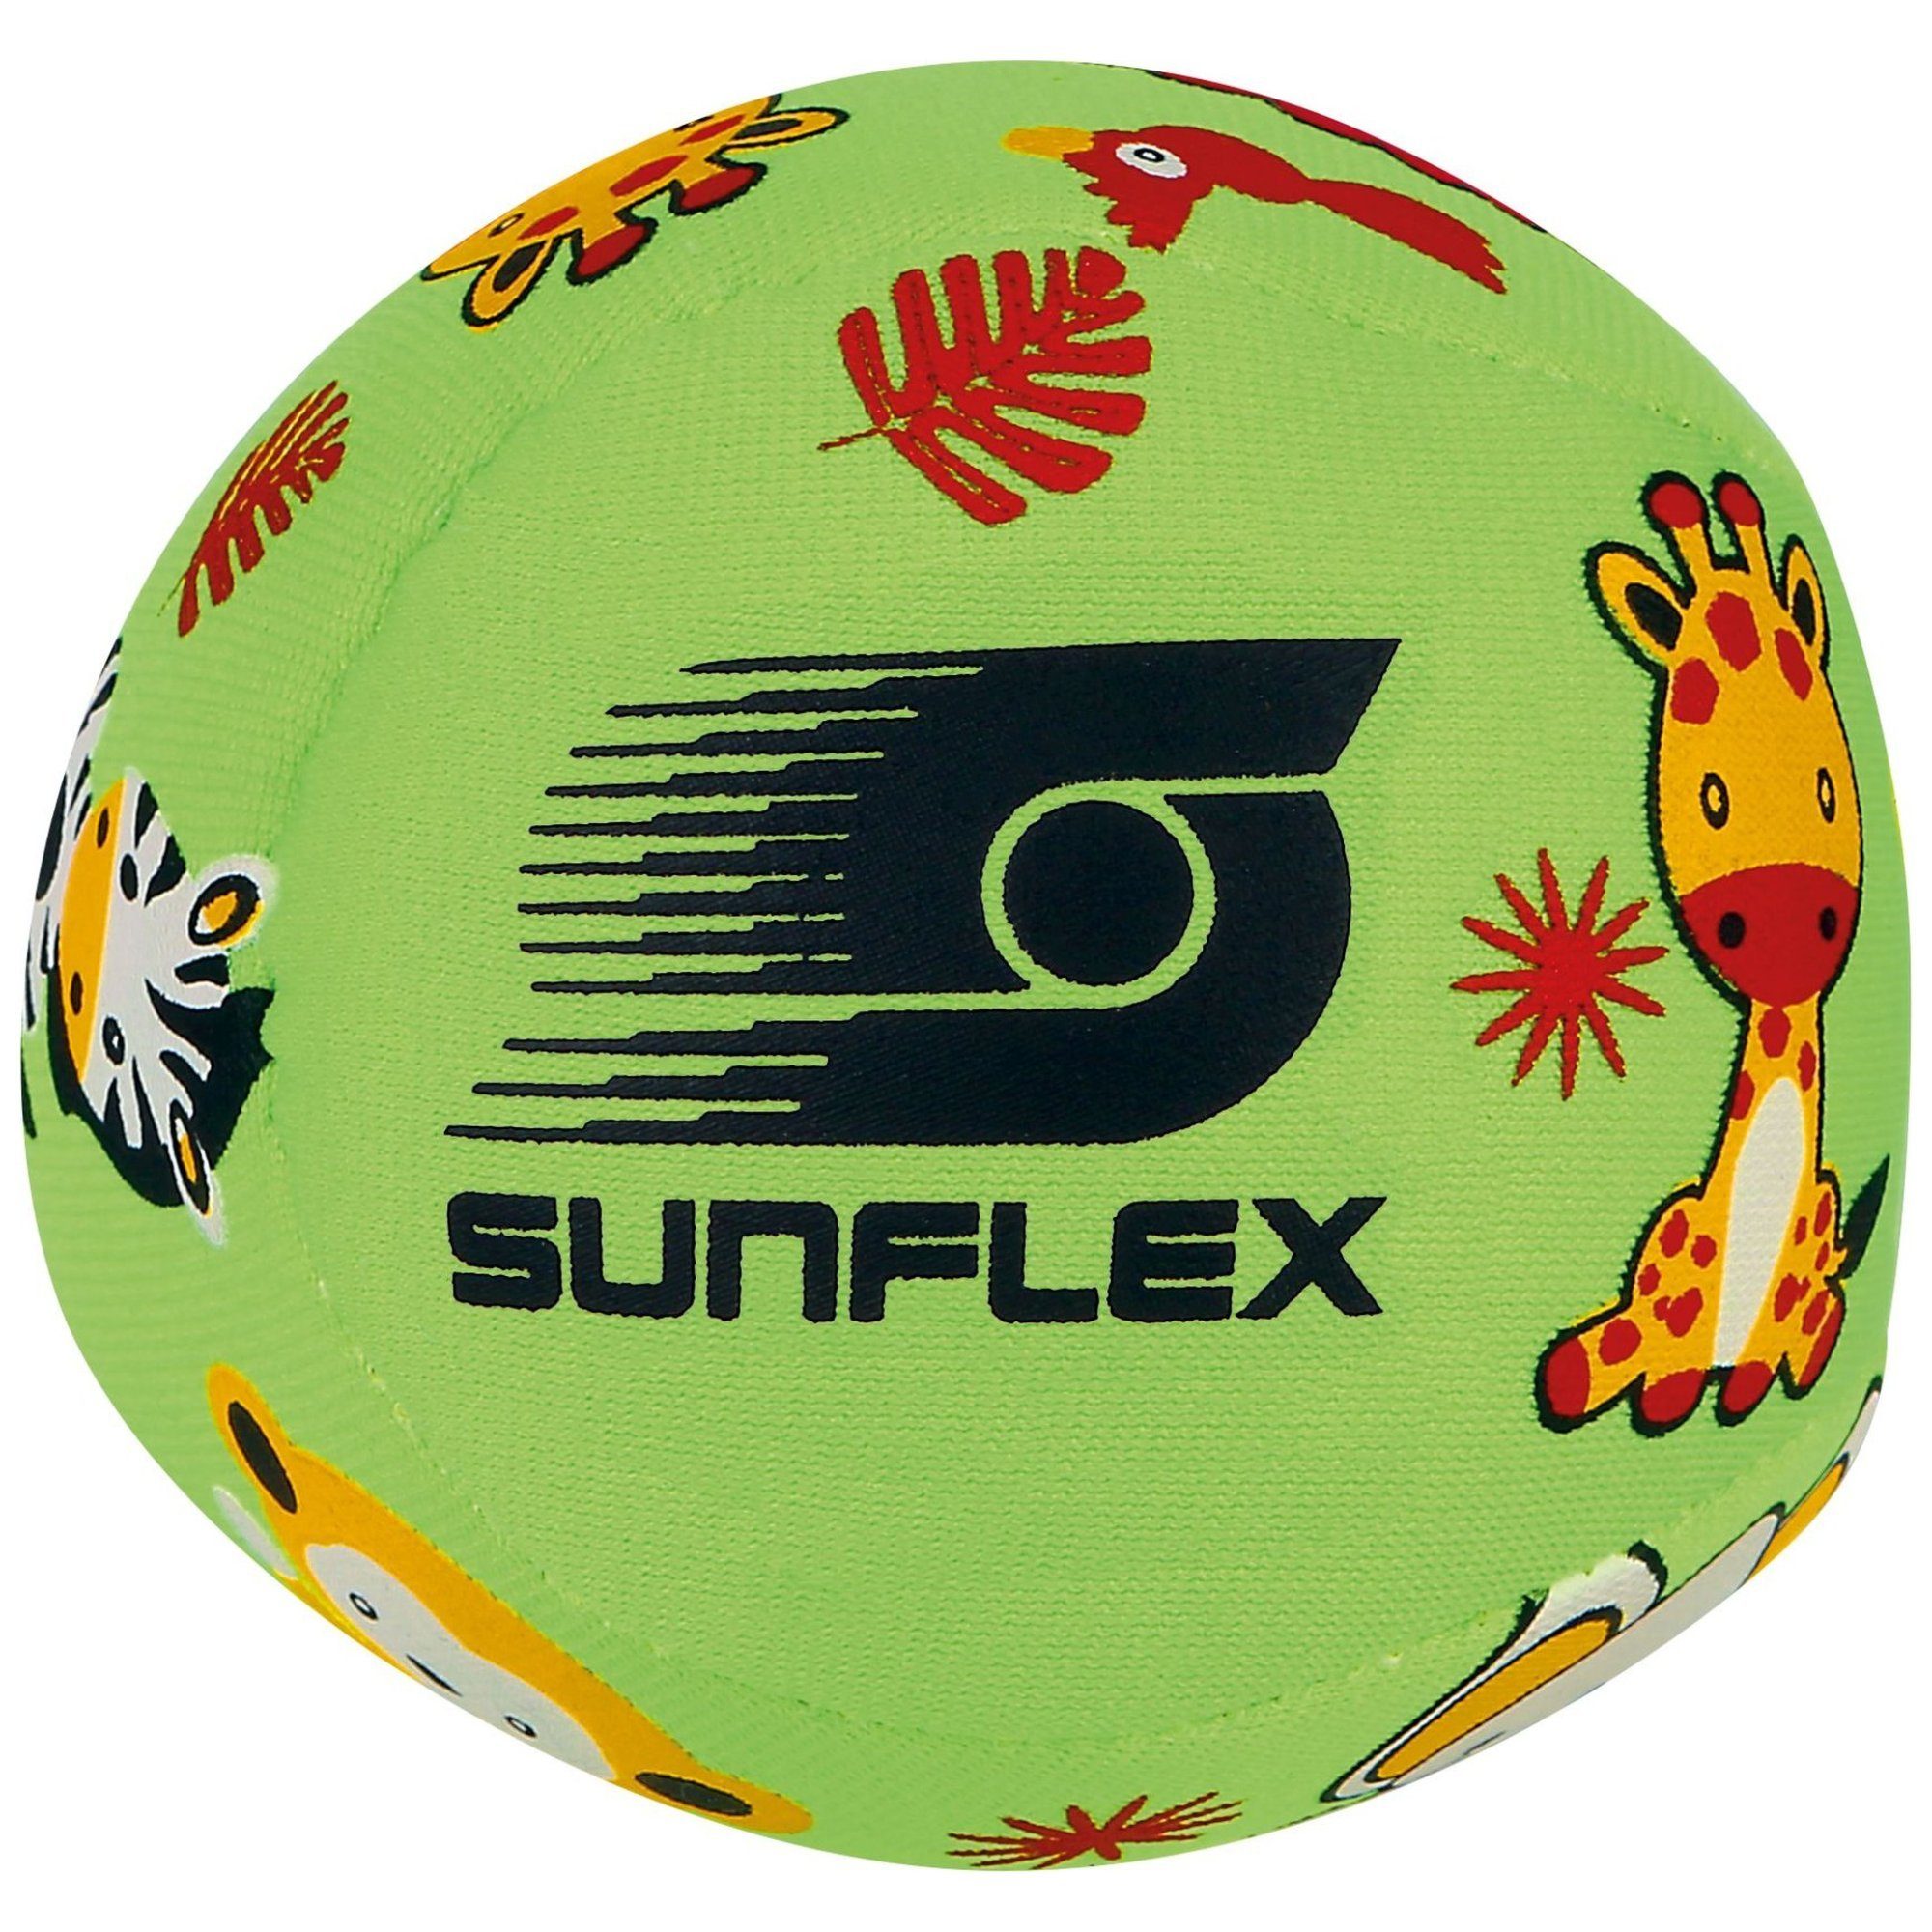 Sunflex Softball sunflex grün Softball Small Youngster